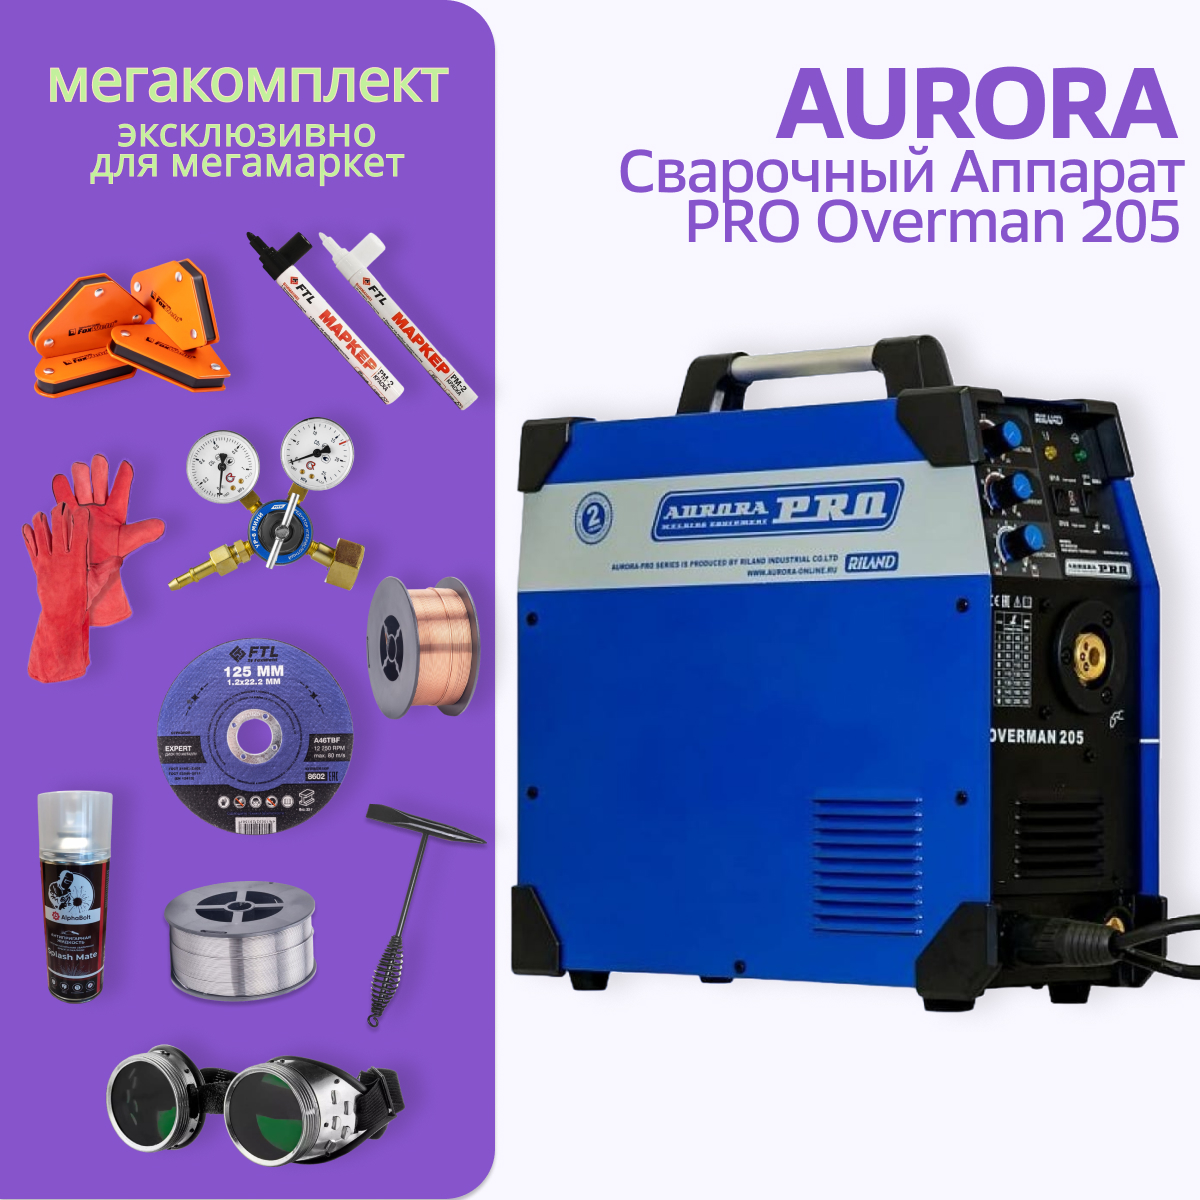 Сварочный полуавтомат Aurora PRO OVERMAN 205 + МЕГА комплект сварочный полуавтомат aurora pro overman 185 маска сварщика спрей редутор мини